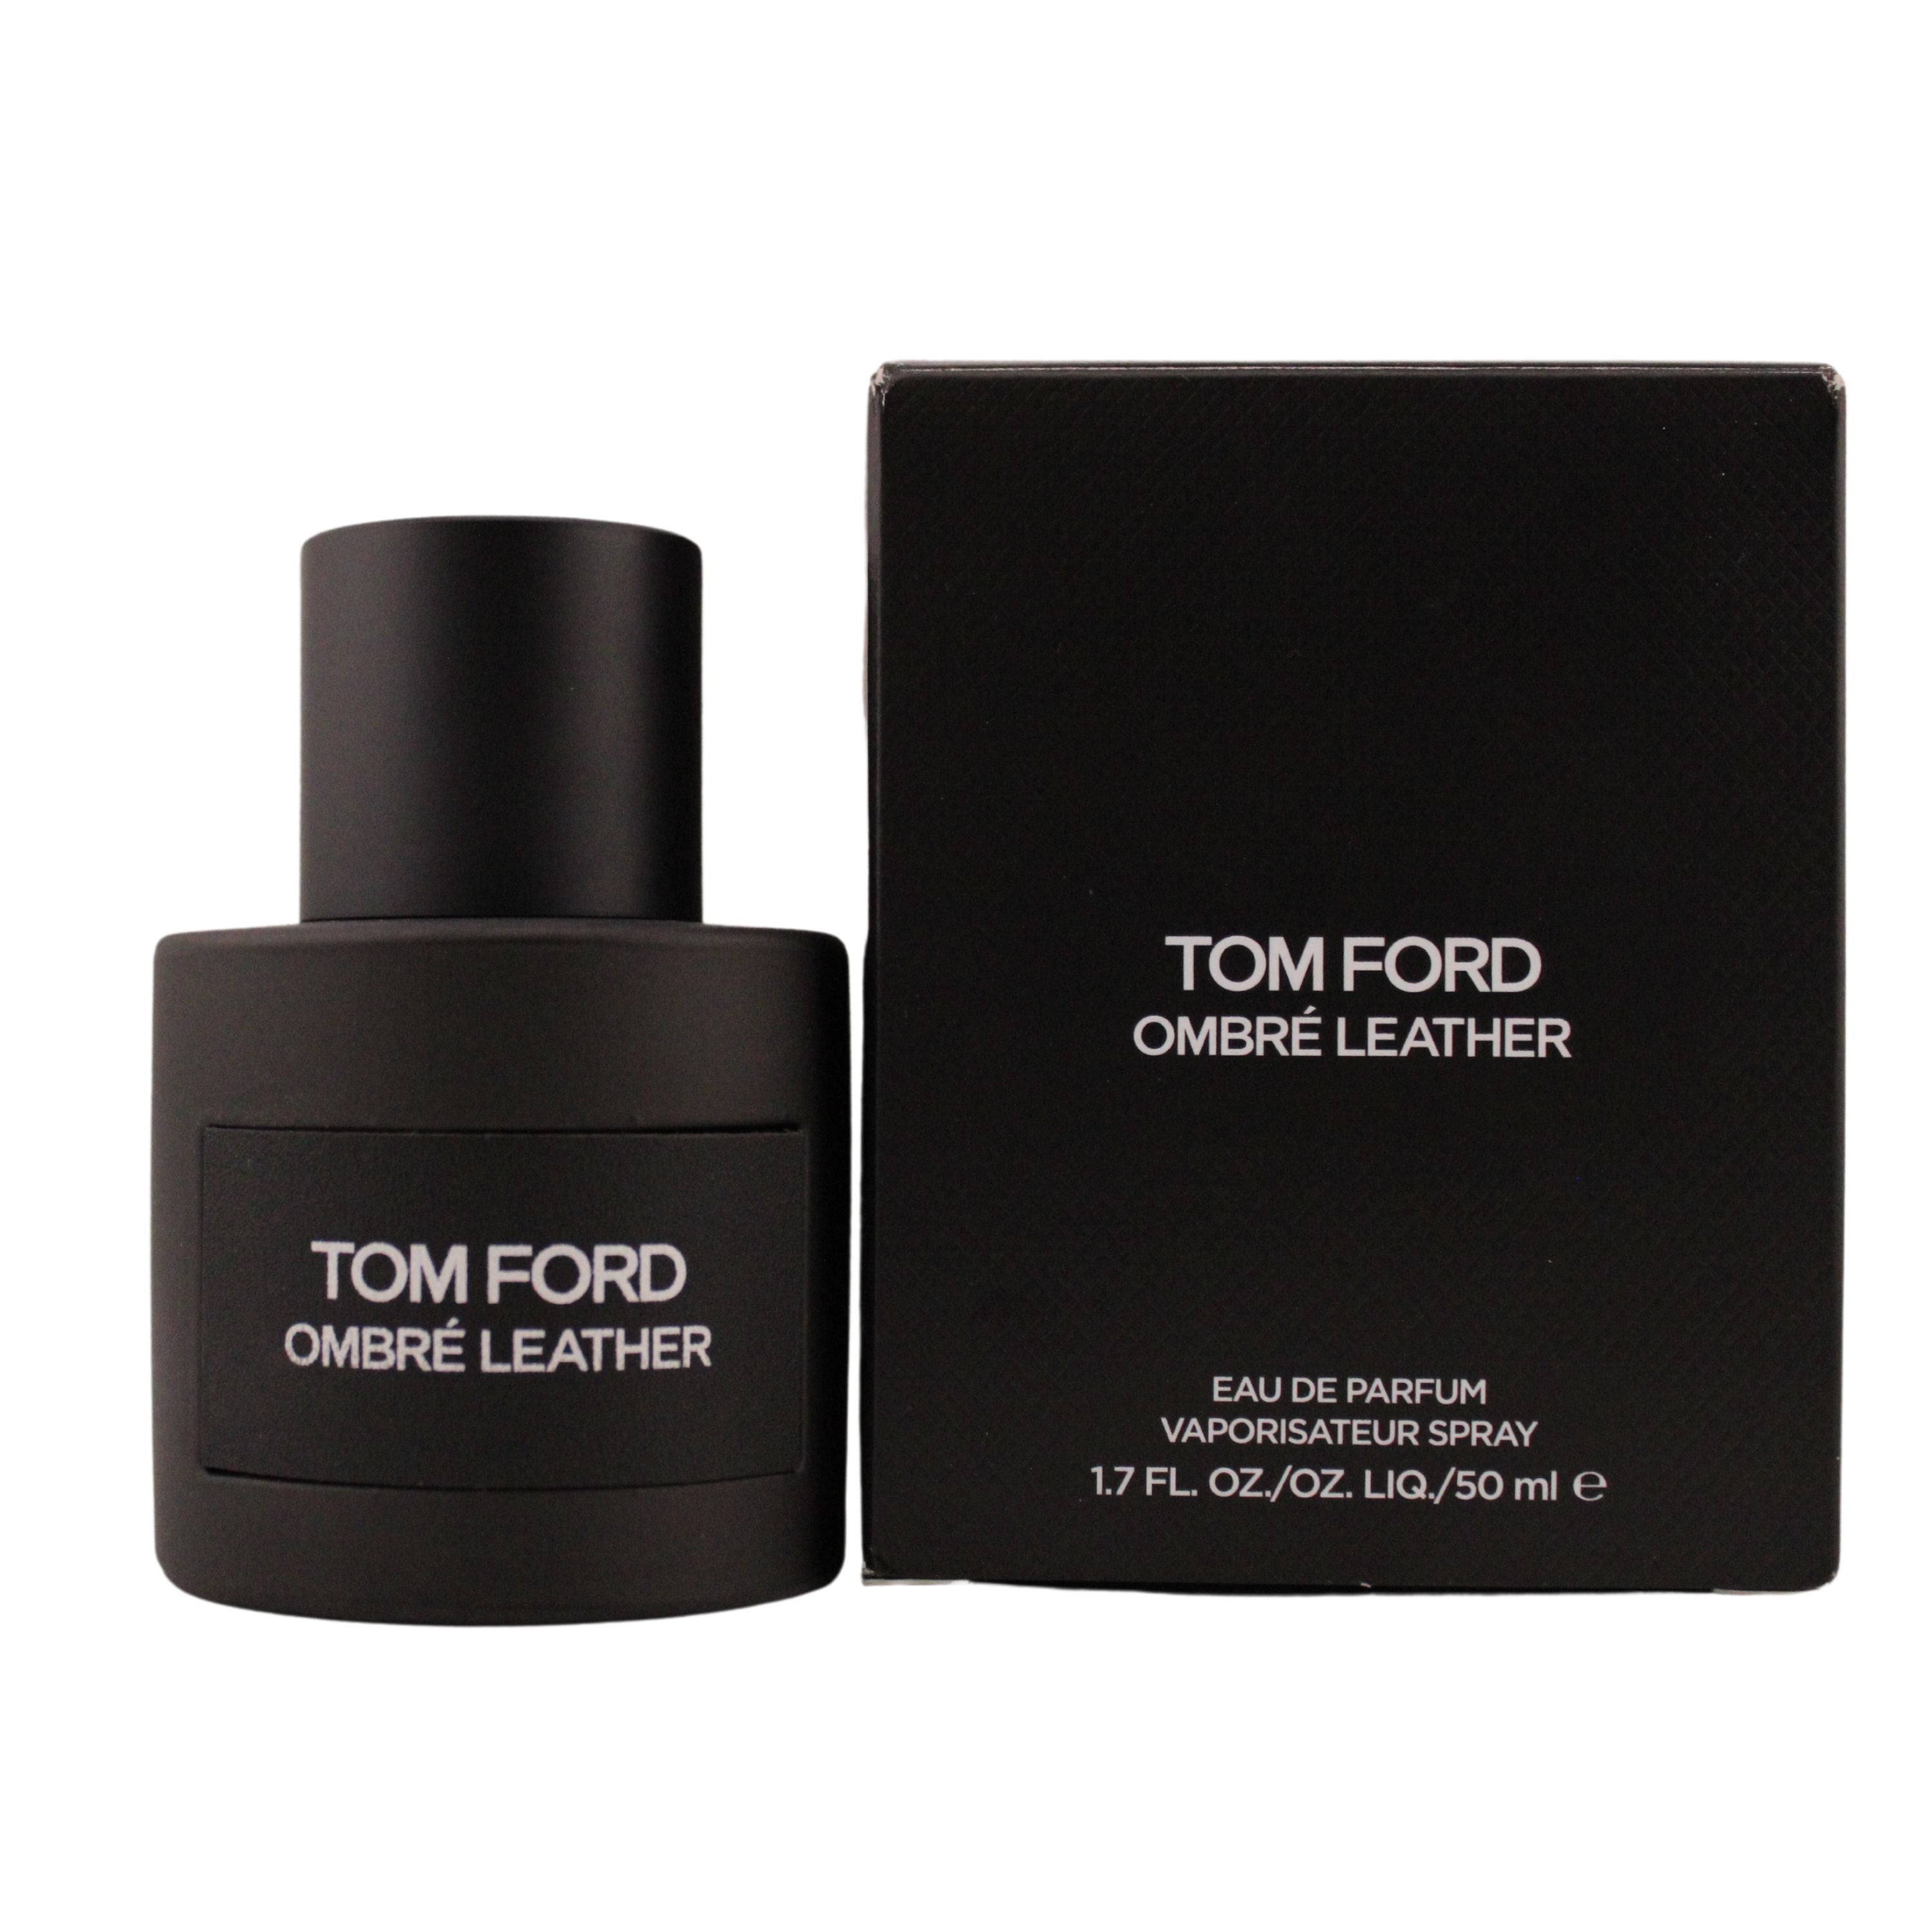 Tom Ford Ombre Leather Eau de Parfum for Unisex